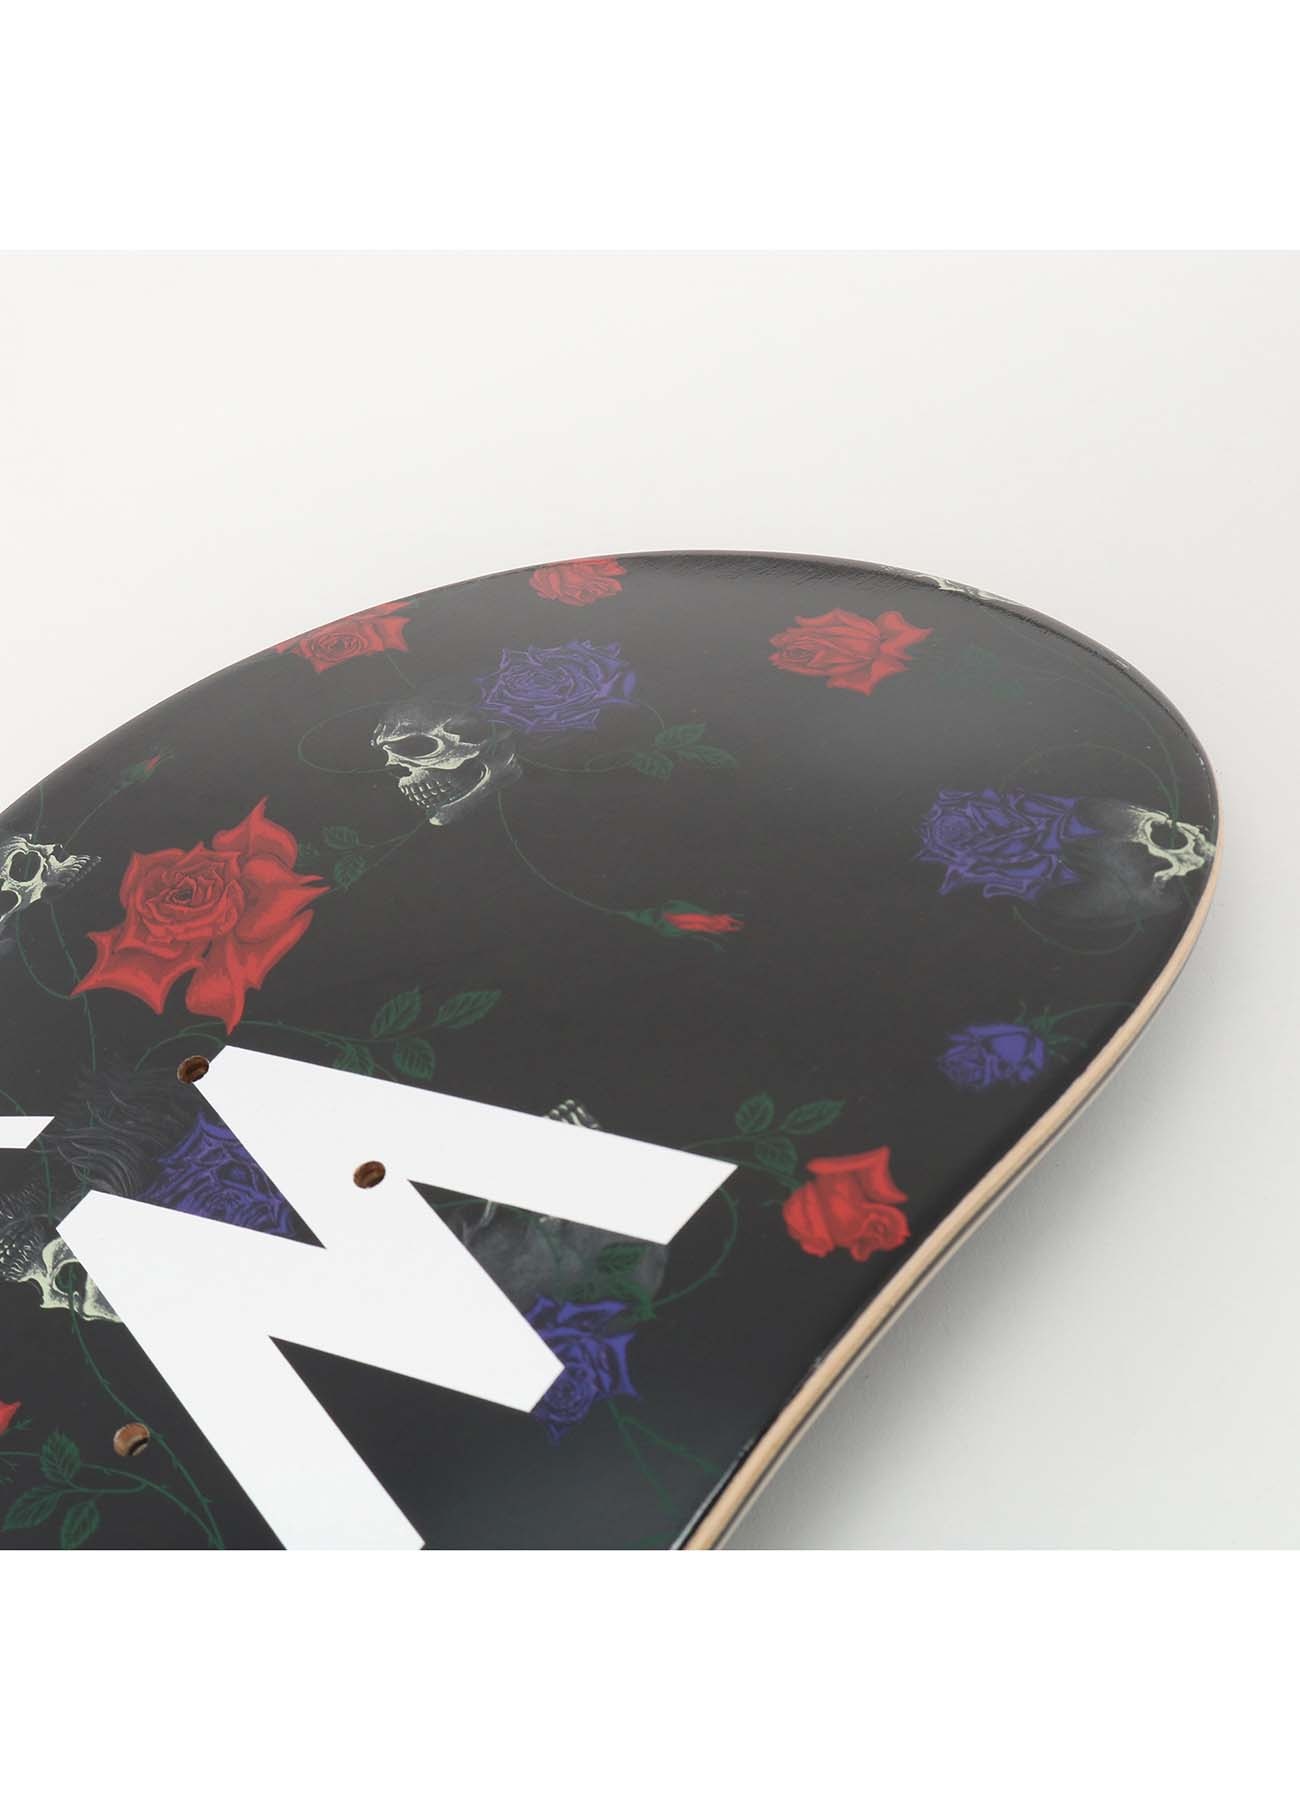 WILDSIDE × silkmasterSB Skateboard Deck(FREE SIZE BLACK